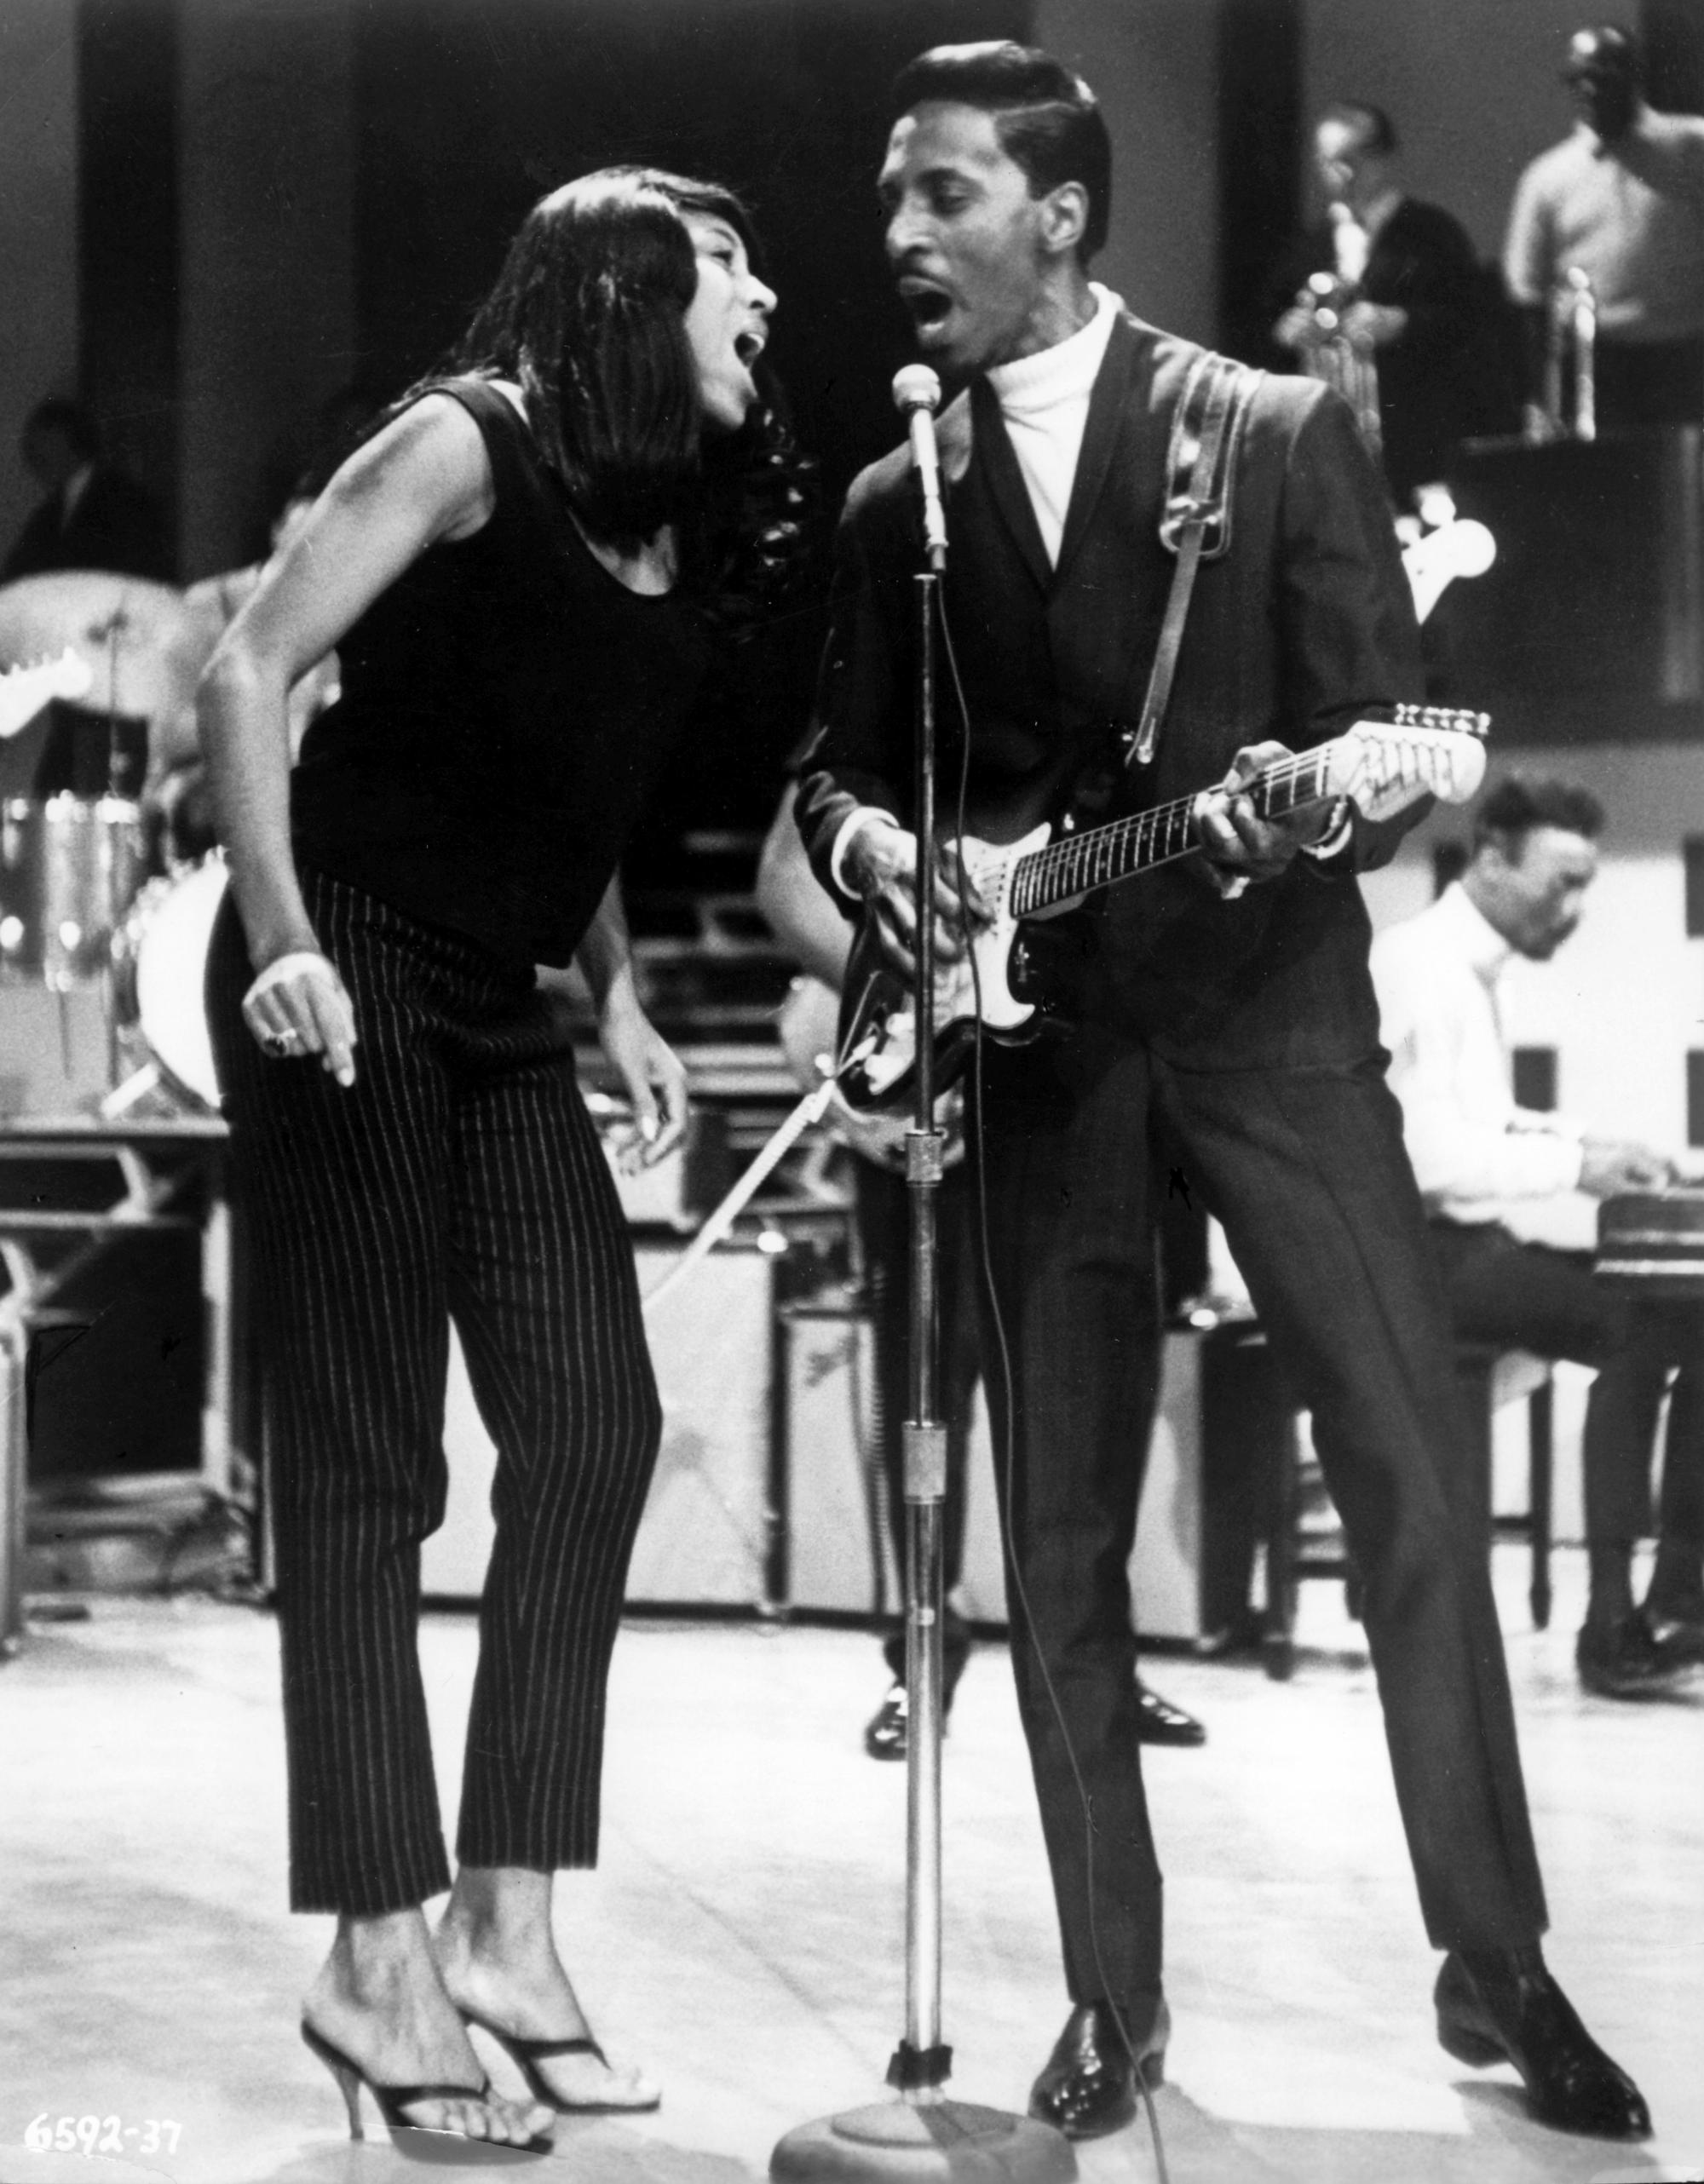 Tina com Ike Turner, o marido que começou por ser seu colega de banda e com quem viveu um casamento marcado pela violência 